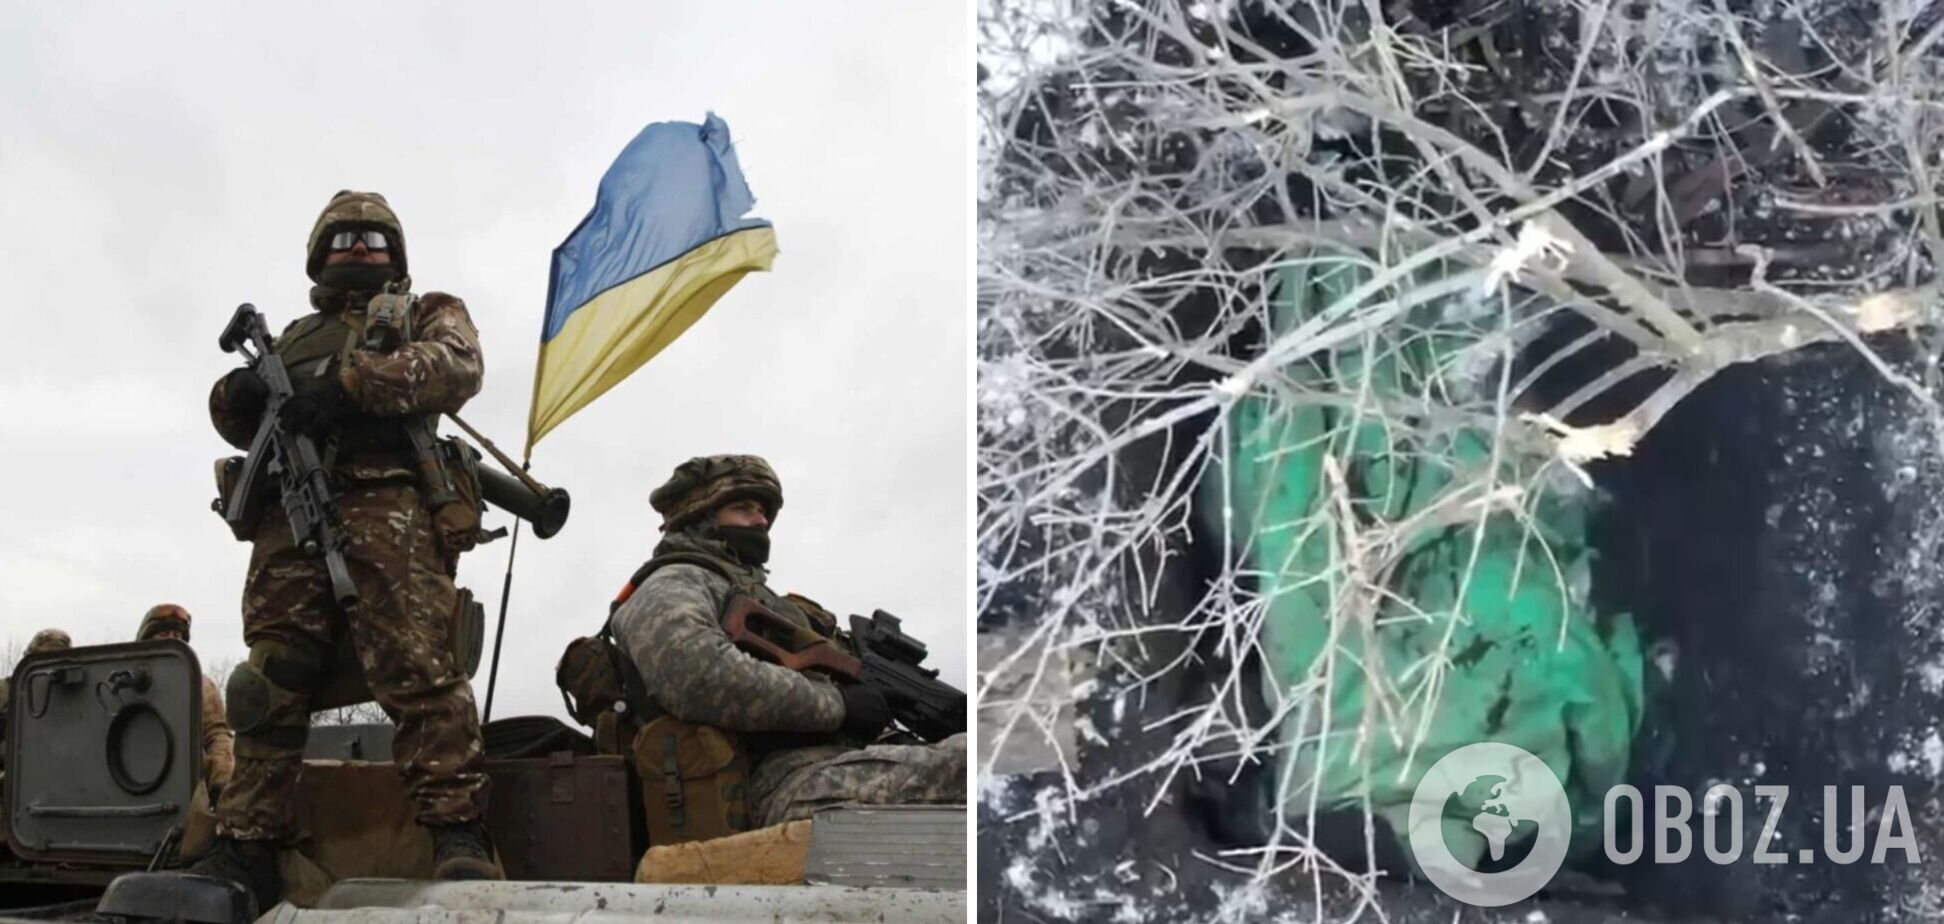 Прямое попадание: украинские бойцы показали, как помогают оккупантам согреться. Видео